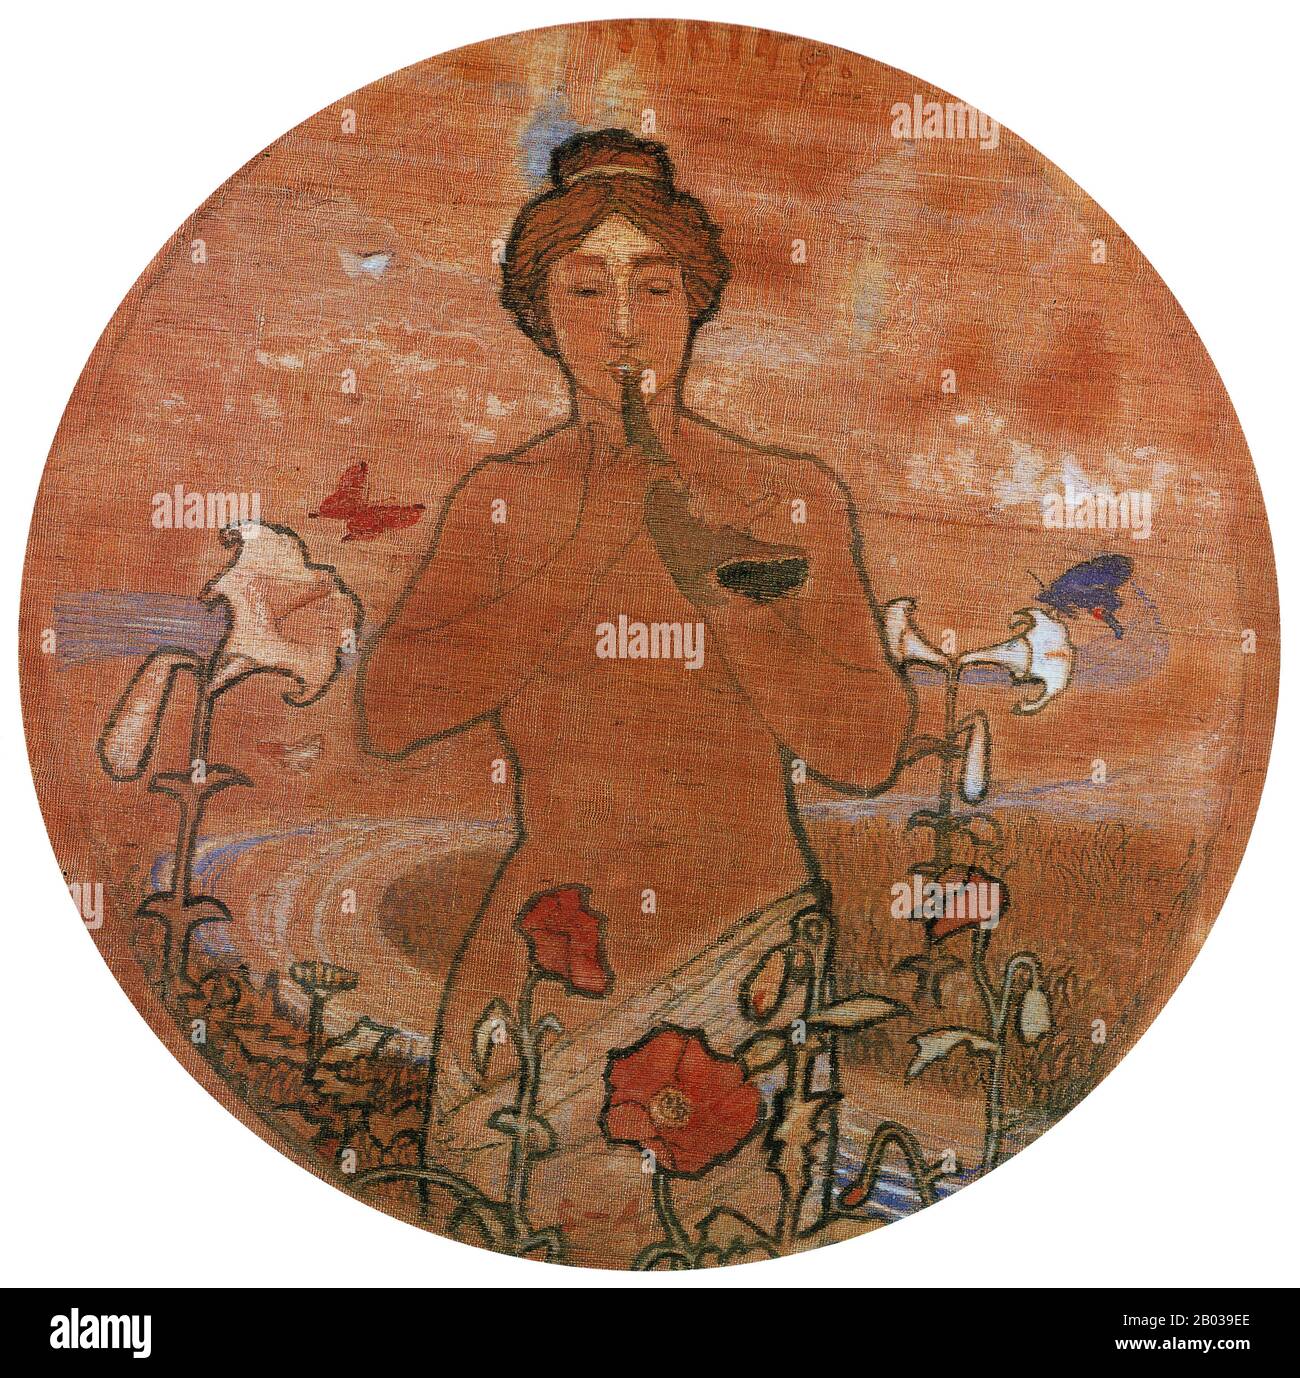 Shigeru Aoki (1882-1911) war ein japanischer Maler, der berühmt für seine Verbindung der japanischen Mythen und Legenden mit der Kunstbewegung im westlichen Stil war, die in einigen japanischen Gemälden des späten 19. Und frühen 20. Jahrhunderts zu finden war. Aoki wurde in einen Ex-Samurai-Haushalt im Norden von Kyushu geboren. Er verließ sein Haus 1899, um künstlerische Studien in Tokio zu verfolgen, und begann bald, kritische Akklamation für sein Kunstwerk und seinen Einsatz von präraphaelitären Brudertechniken, gemischt mit Kojiki-Themen, zu sammeln. Er starb im März 1911 an Tuberkulose im Alter von nur 28 Jahren. Stockfoto